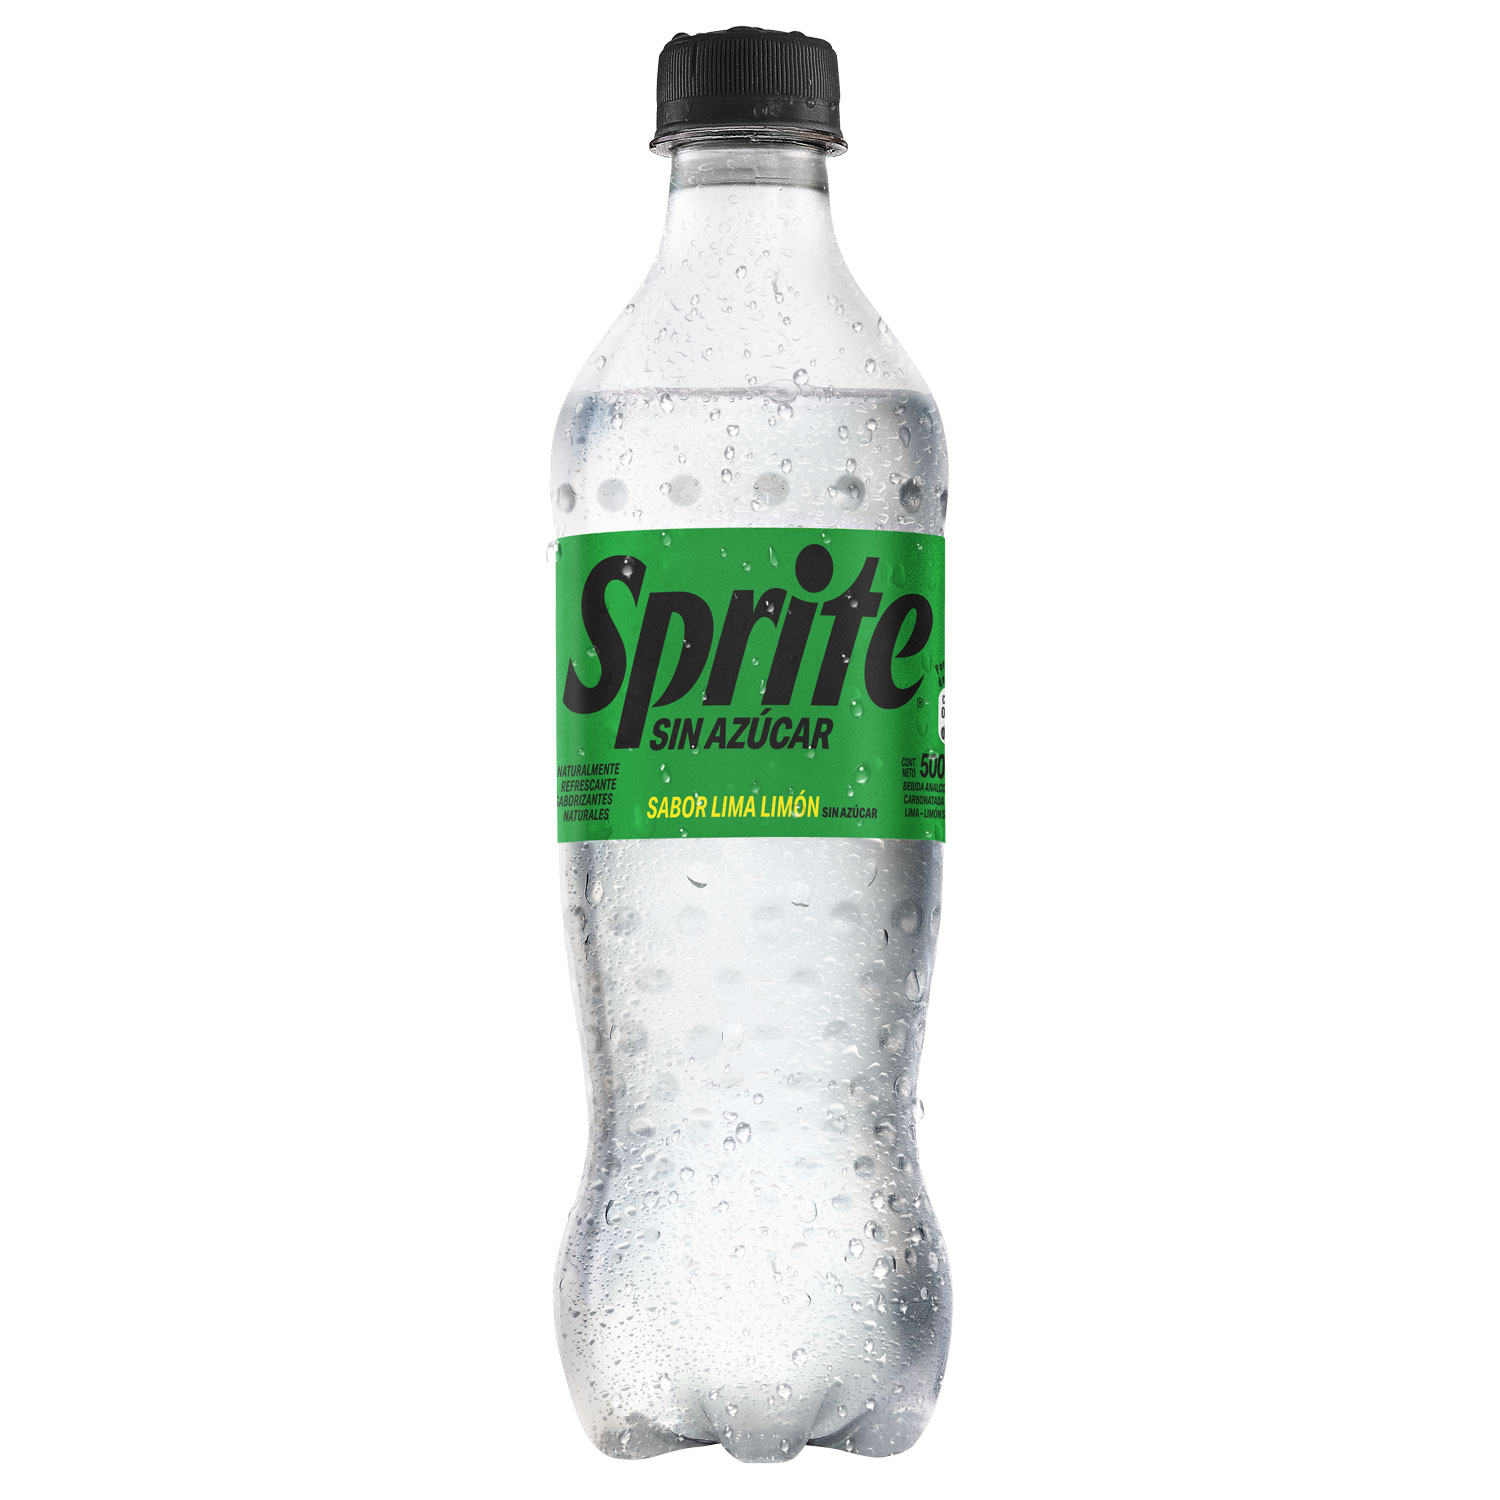 Botella de Sprite Sin Azúcar